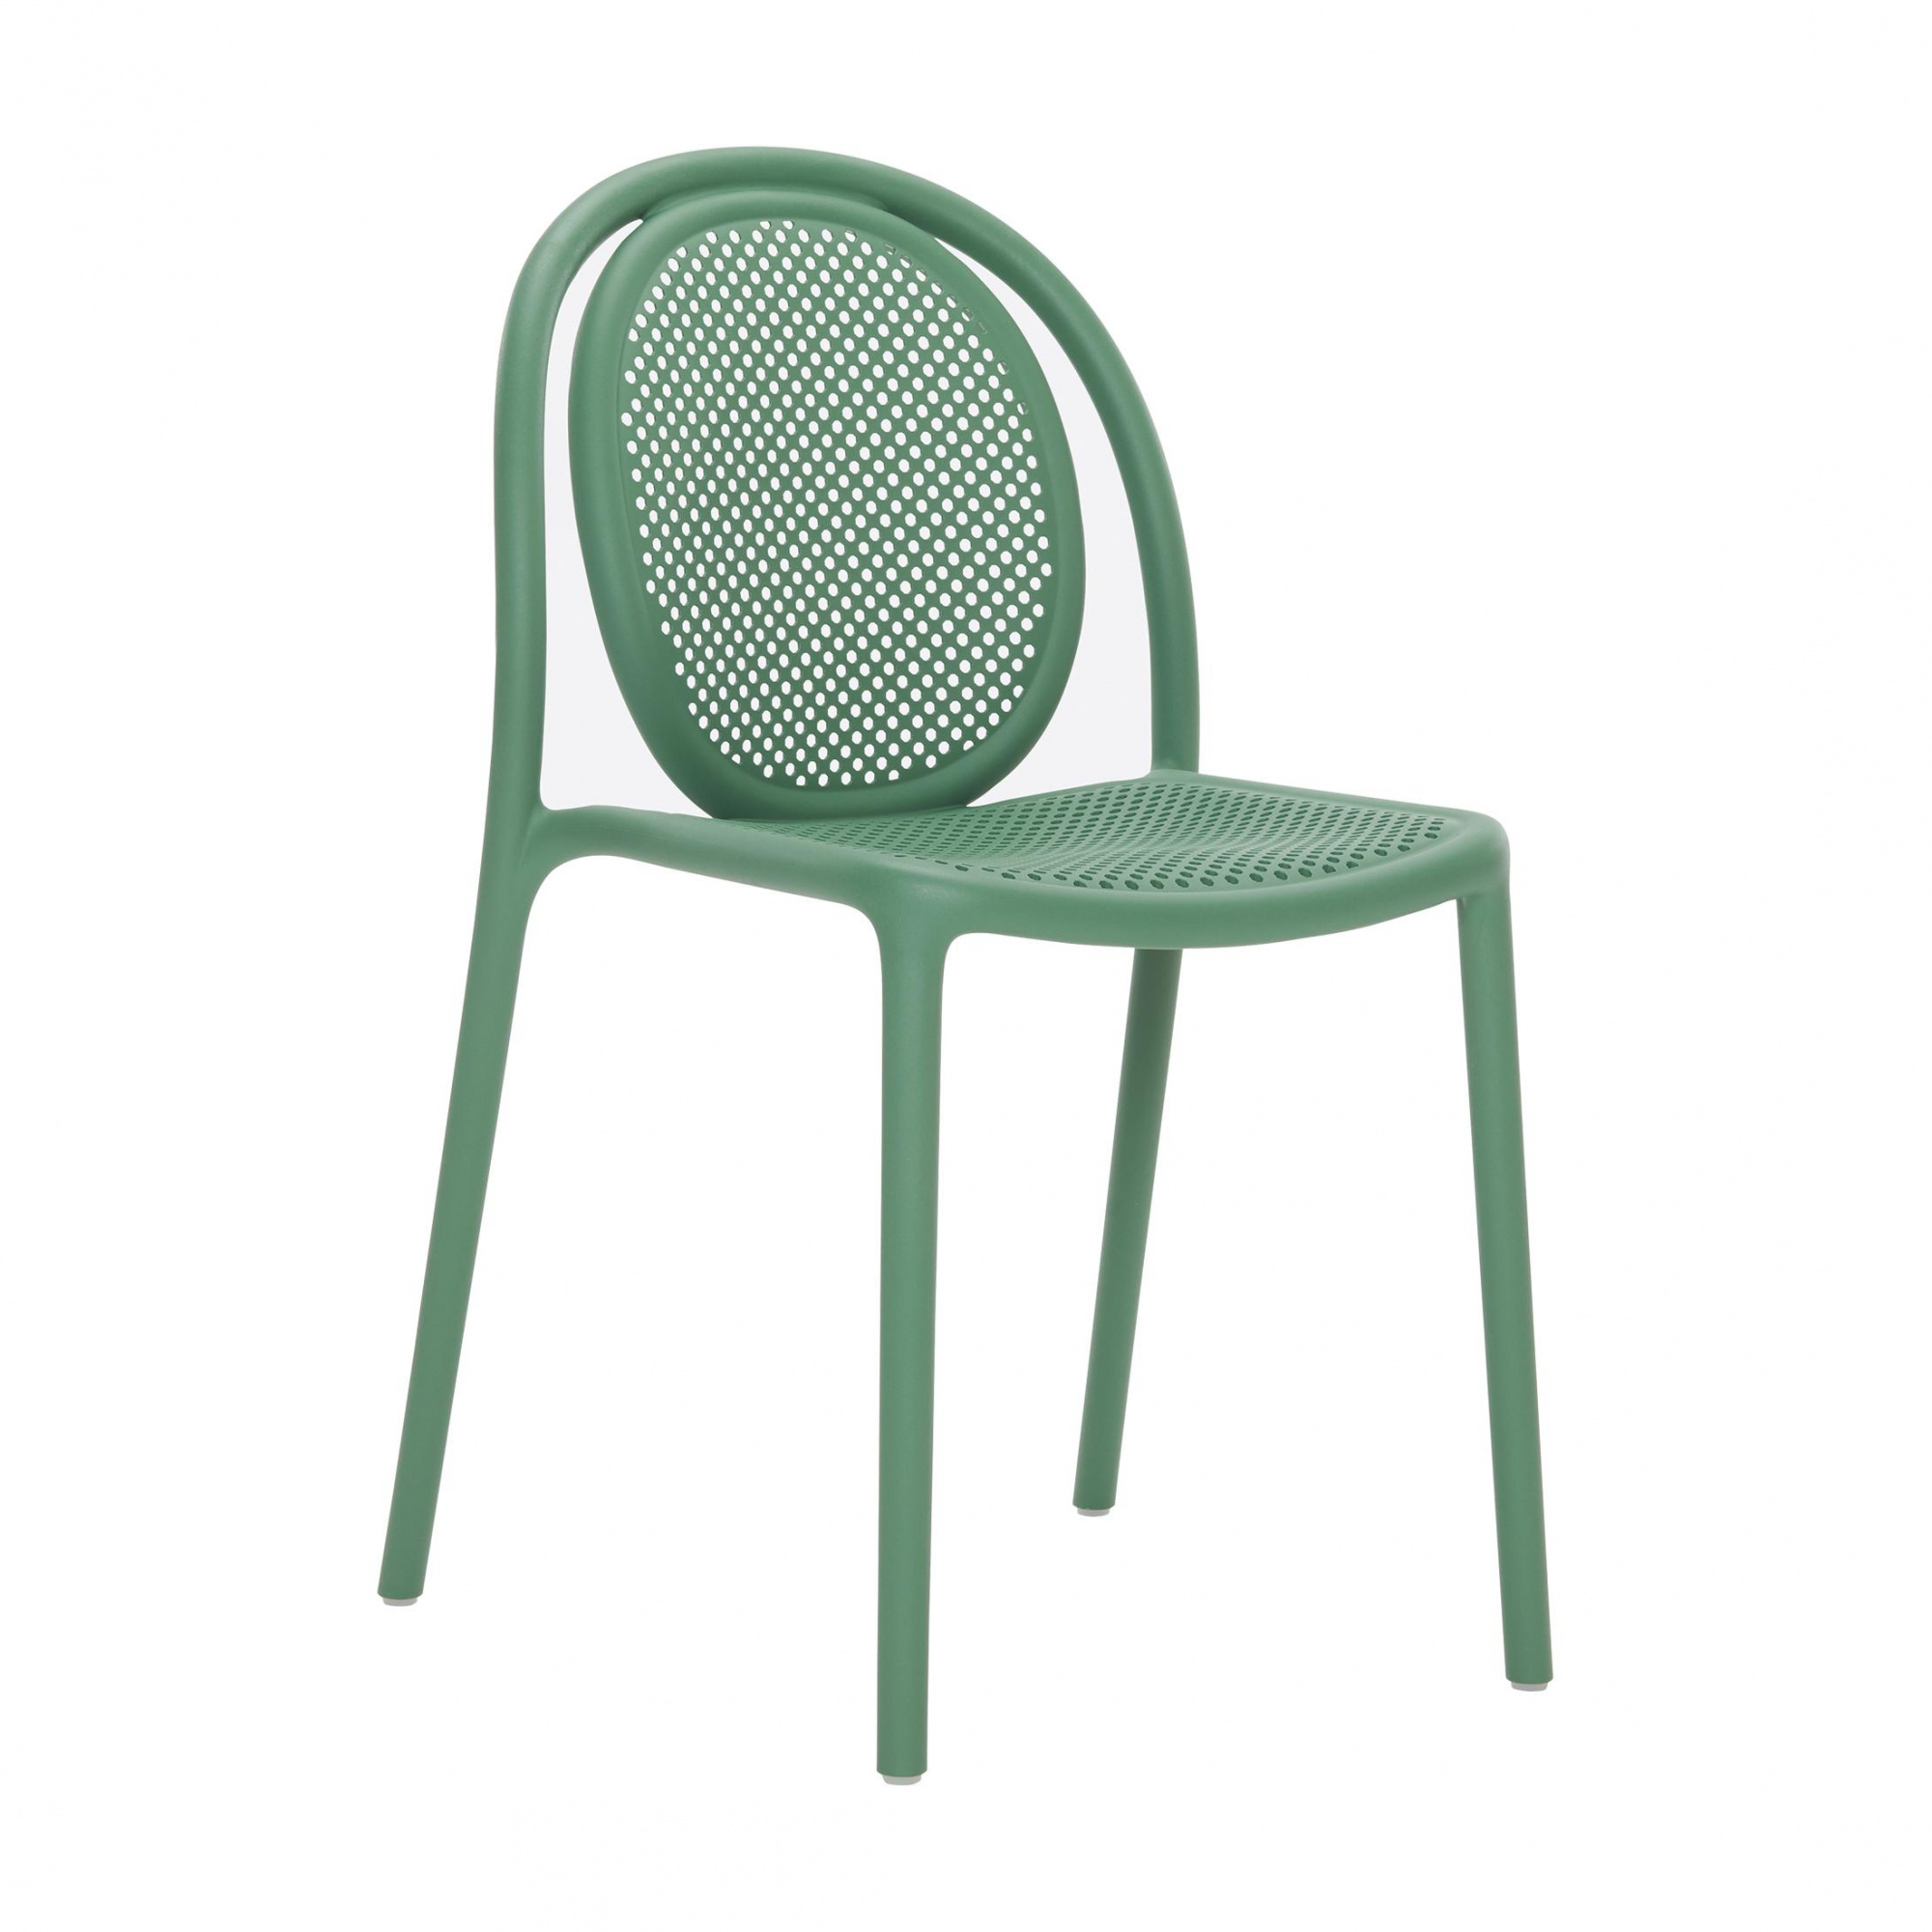 pedrali - chaise de jardin remind 3730 - vert/lxhxp 49x82x52cm